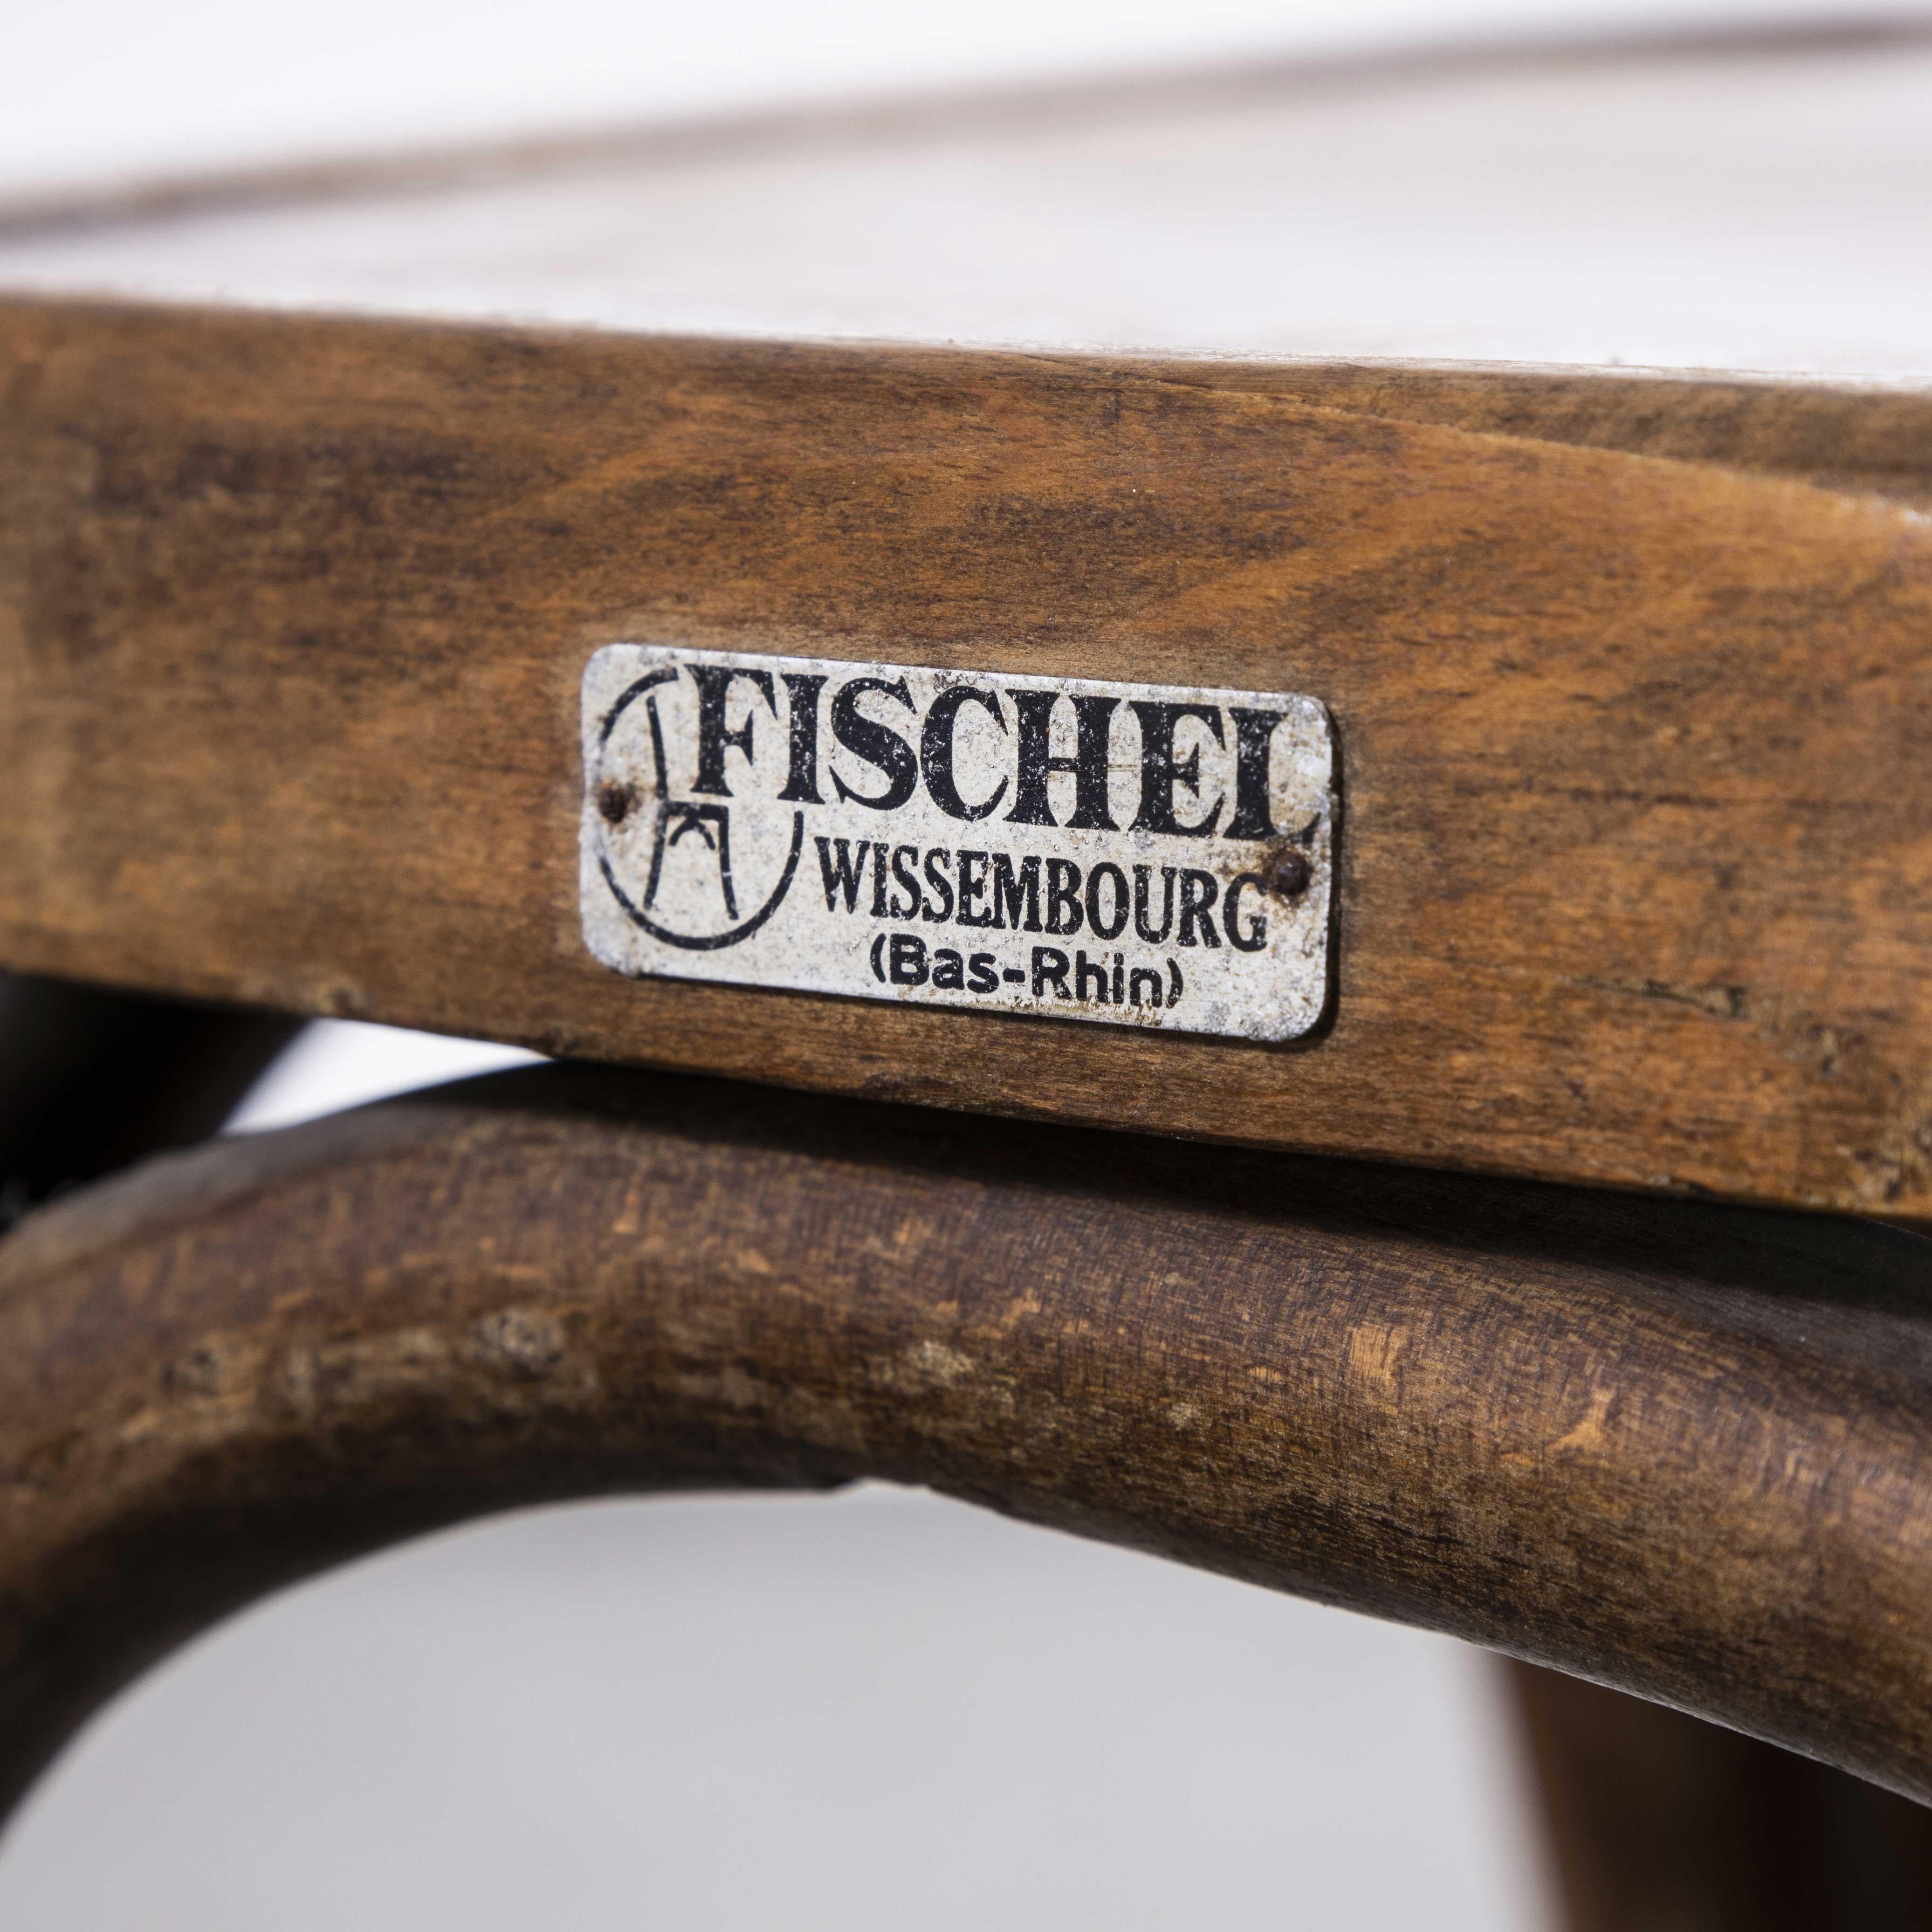 1940's Fischel French Bentwood Dark Walnut Dining Chairs - Set Of Eight
chaises de salle à manger Fischel en bois de rose et noyer foncé des années 1940 - Lot de huit. Le procédé de pliage à la vapeur du hêtre pour créer d'élégantes chaises a été